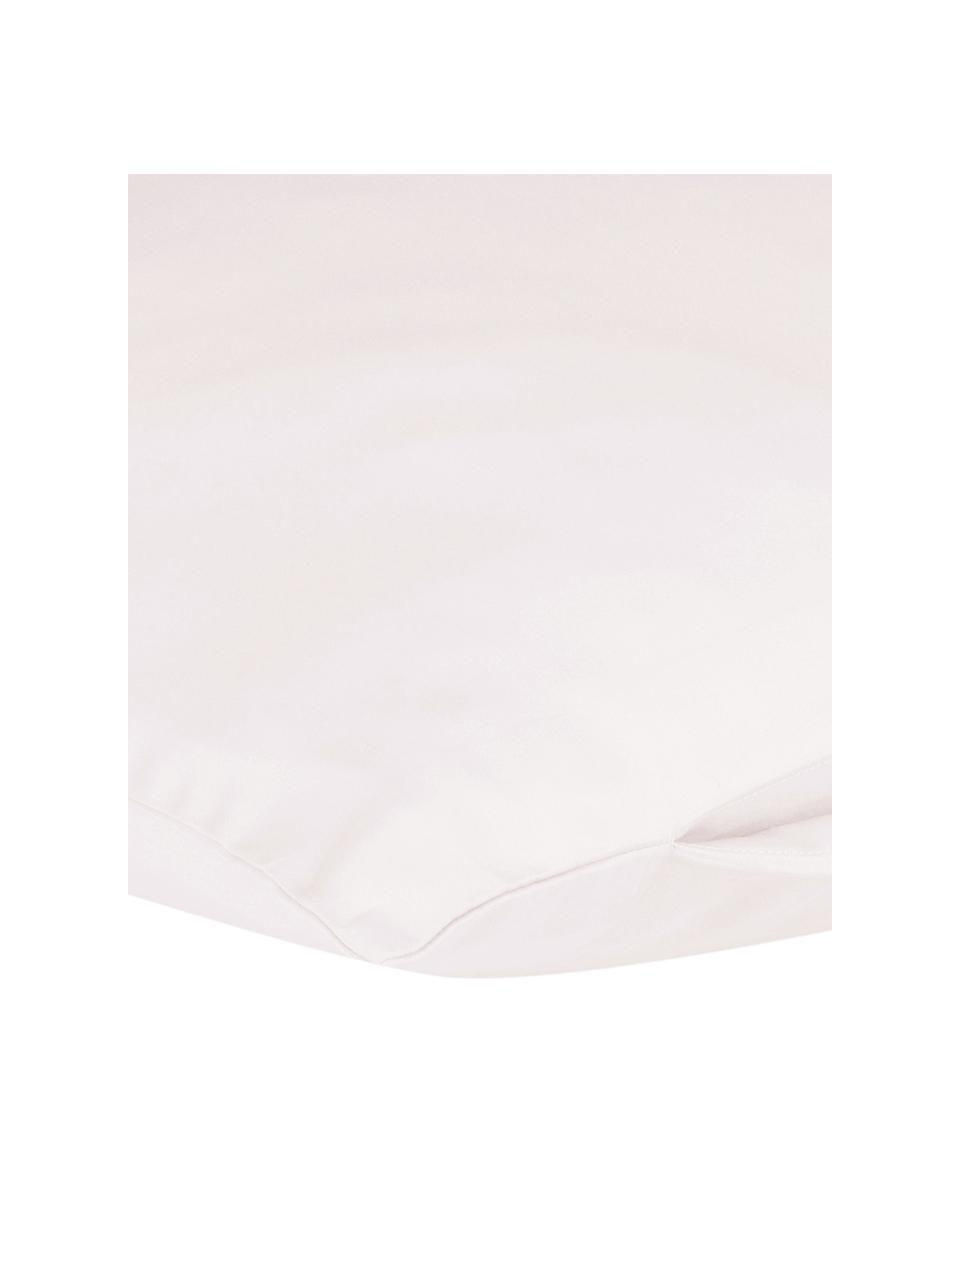 Funda de almohada de satén Comfort, 45 x 110 cm, Rosa, An 45 x L 110 cm